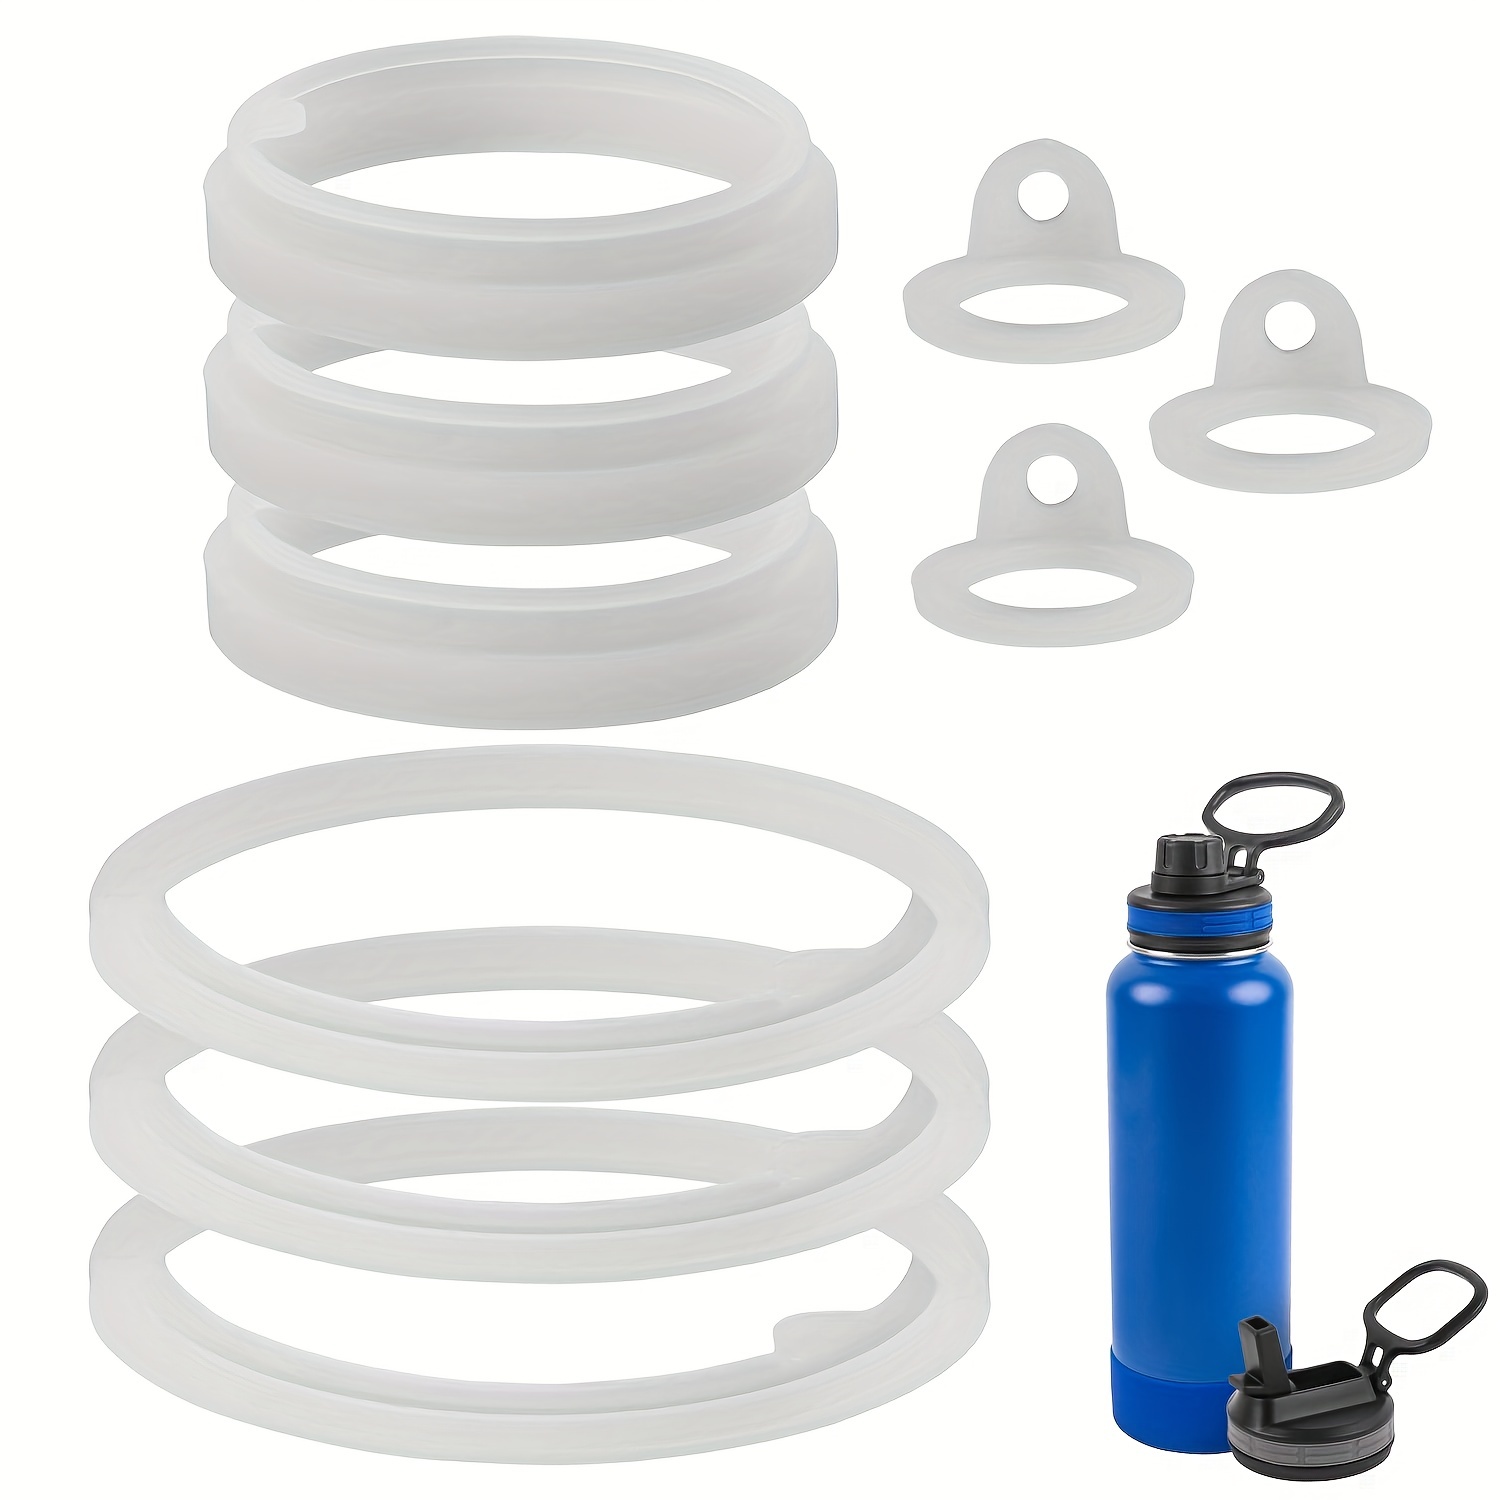 3Pcs Silicone Water Bottle Gasket Replacement Sealing Ring Gasket